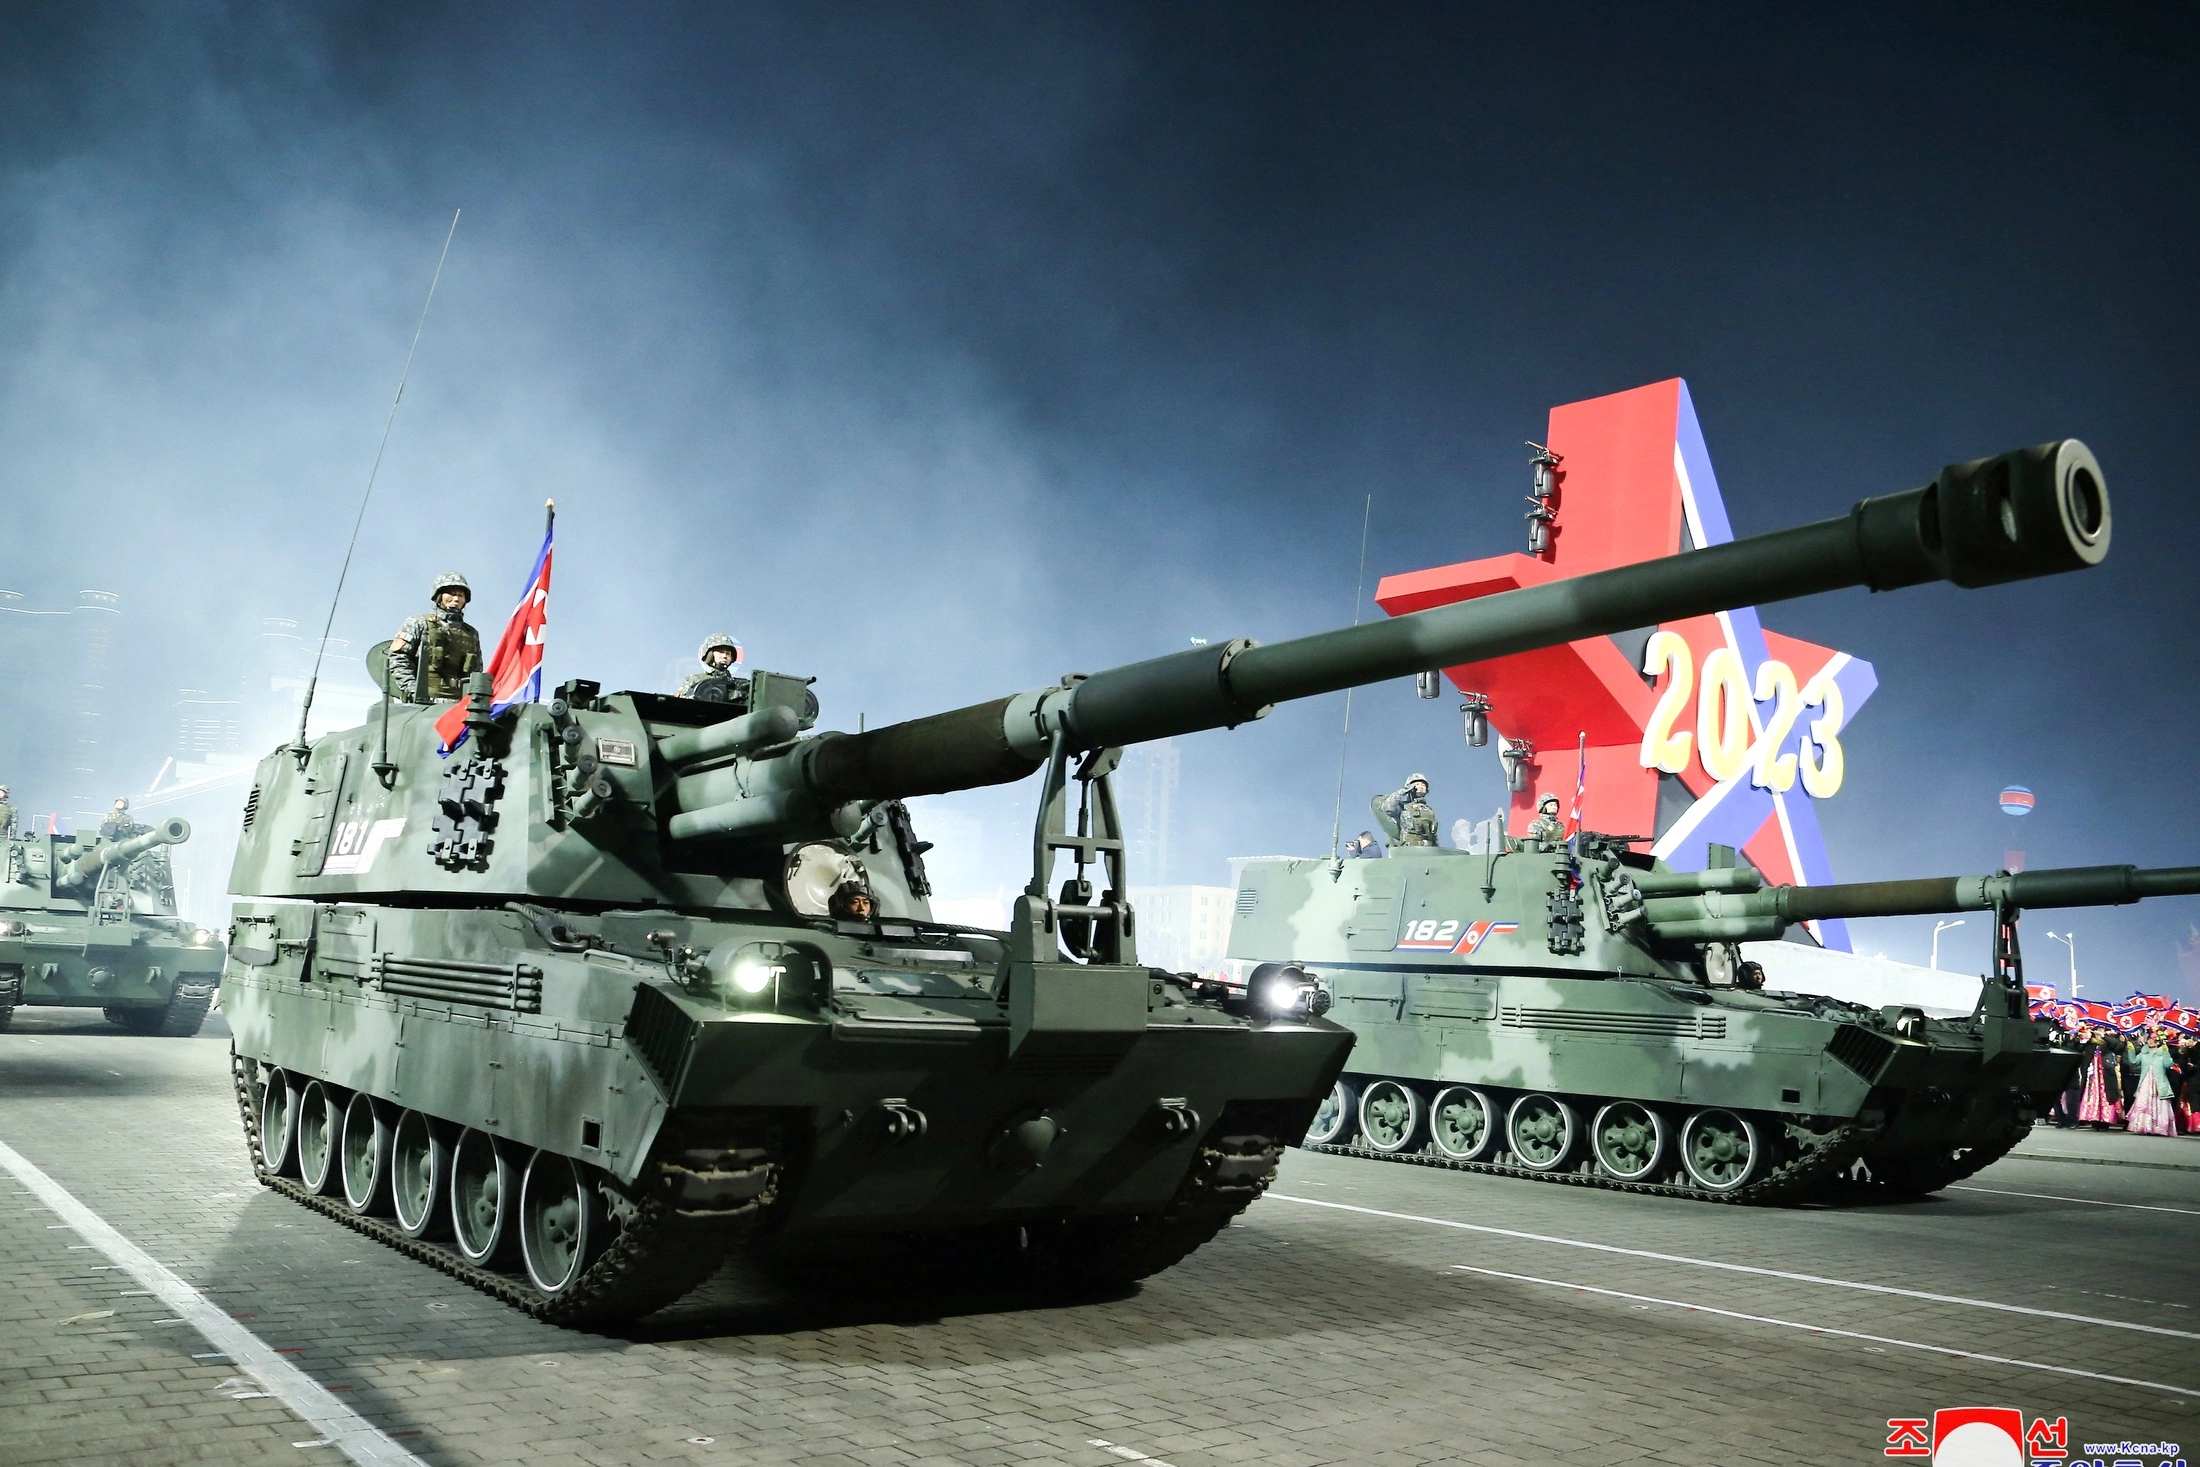 Новый танк северной кореи. Парад КНДР 2023. М-2018 САУ КНДР. Военный парад в Северной Корее 2023. 152 Мм САУ M-2018 Северной Кореи.